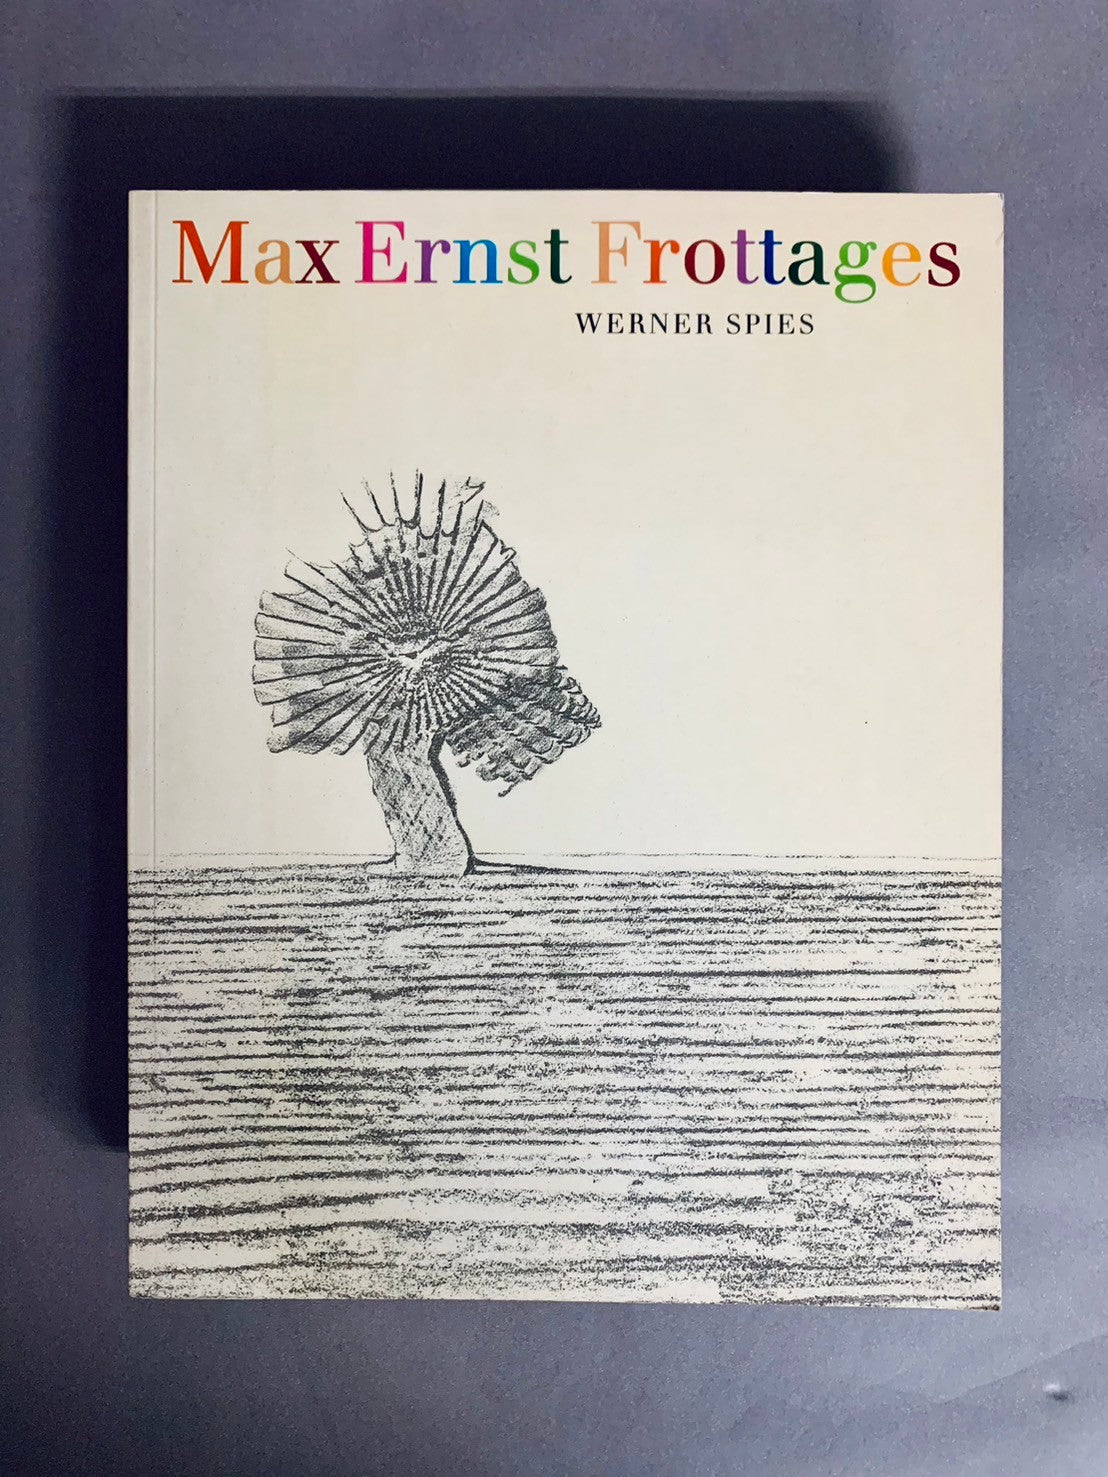 Max Ernst Frottage　マックス・エルンストのフロッタージュ　洋書